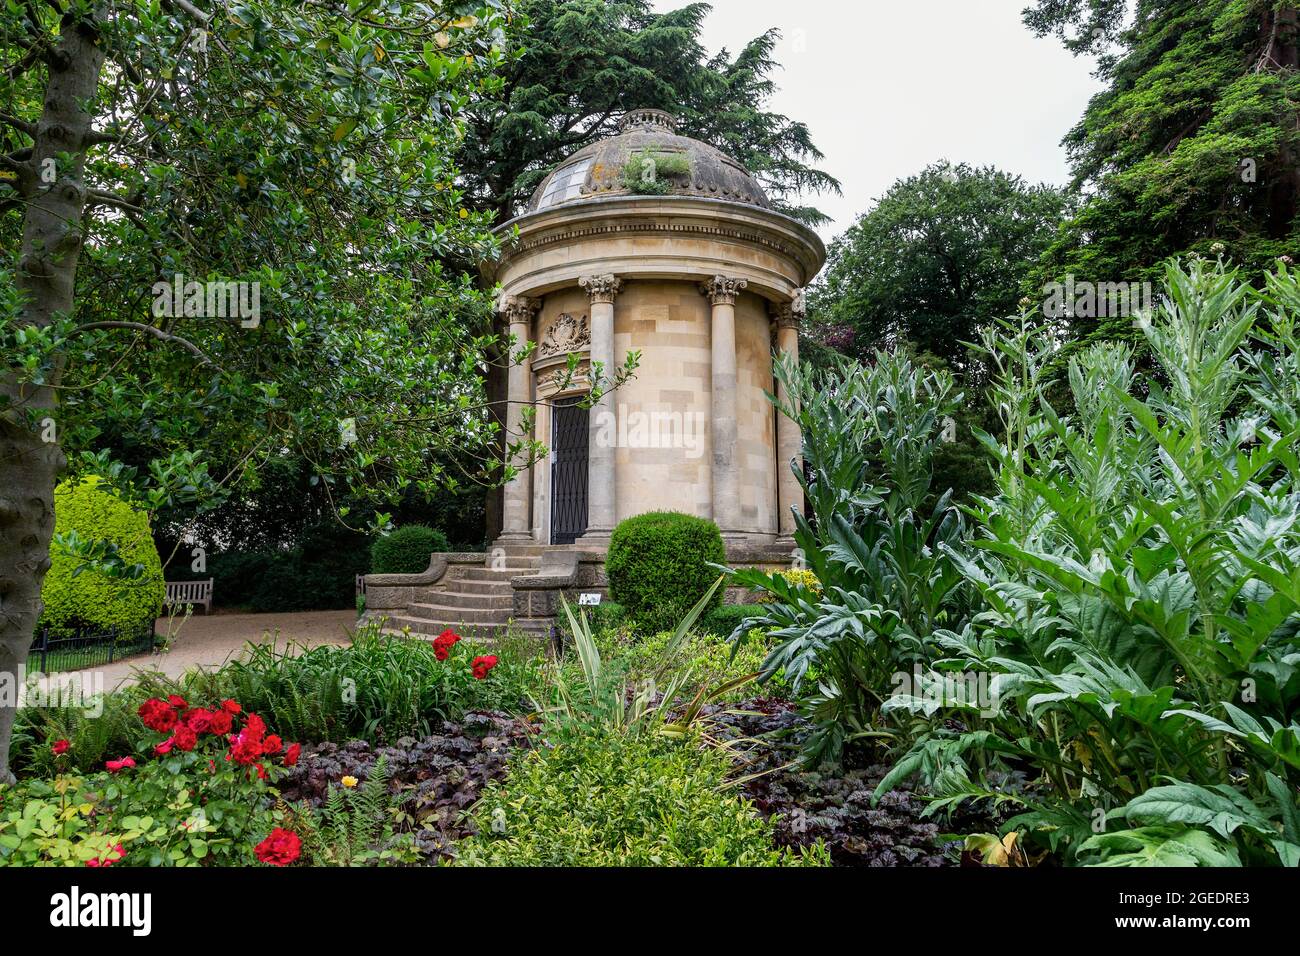 Le Mémorial de Jephson, dans les jardins de Jephson, Royal Leamington Spa. Une statue en marbre du Dr Henry Jephson se dresse sur une plinthe à l'intérieur. Banque D'Images